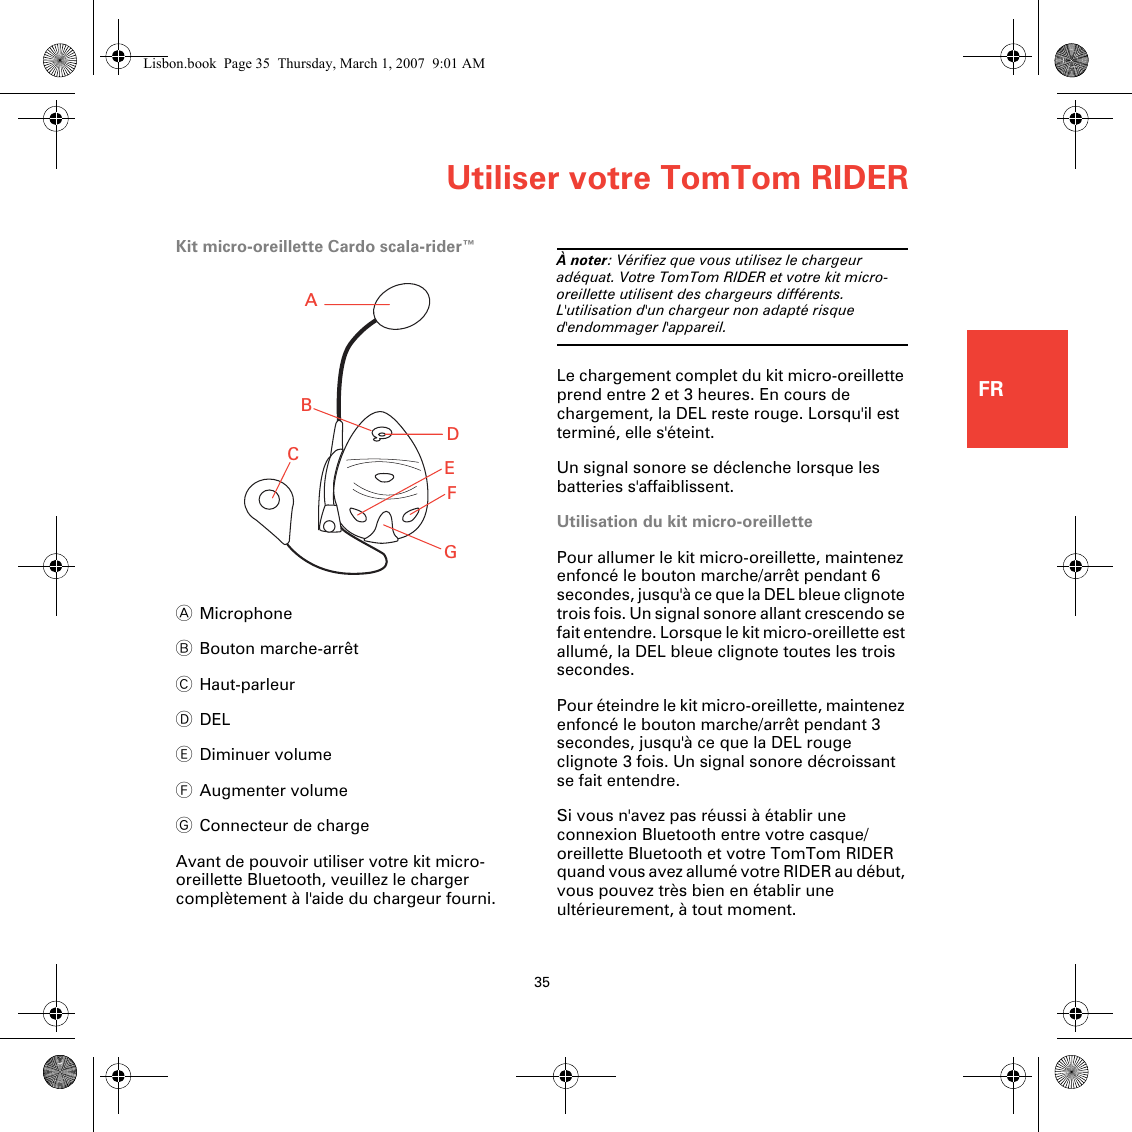 Utiliser votre TomTom RIDER35FRKit micro-oreillette Cardo scala-rider™AMicrophoneBBouton marche-arrêtCHaut-parleurDDELEDiminuer volumeFAugmenter volumeGConnecteur de chargeAvant de pouvoir utiliser votre kit micro-oreillette Bluetooth, veuillez le charger complètement à l&apos;aide du chargeur fourni.À noter: Vérifiez que vous utilisez le chargeur adéquat. Votre TomTom RIDER et votre kit micro-oreillette utilisent des chargeurs différents. L&apos;utilisation d&apos;un chargeur non adapté risque d&apos;endommager l&apos;appareil.Le chargement complet du kit micro-oreillette prend entre 2 et 3 heures. En cours de chargement, la DEL reste rouge. Lorsqu&apos;il est terminé, elle s&apos;éteint.Un signal sonore se déclenche lorsque les batteries s&apos;affaiblissent.Utilisation du kit micro-oreillettePour allumer le kit micro-oreillette, maintenez enfoncé le bouton marche/arrêt pendant 6 secondes, jusqu&apos;à ce que la DEL bleue clignote trois fois. Un signal sonore allant crescendo se fait entendre. Lorsque le kit micro-oreillette est allumé, la DEL bleue clignote toutes les trois secondes.Pour éteindre le kit micro-oreillette, maintenez enfoncé le bouton marche/arrêt pendant 3 secondes, jusqu&apos;à ce que la DEL rouge clignote 3 fois. Un signal sonore décroissant se fait entendre.Si vous n&apos;avez pas réussi à établir une connexion Bluetooth entre votre casque/oreillette Bluetooth et votre TomTom RIDER quand vous avez allumé votre RIDER au début, vous pouvez très bien en établir une ultérieurement, à tout moment. ABCEDFGLisbon.book  Page 35  Thursday, March 1, 2007  9:01 AM